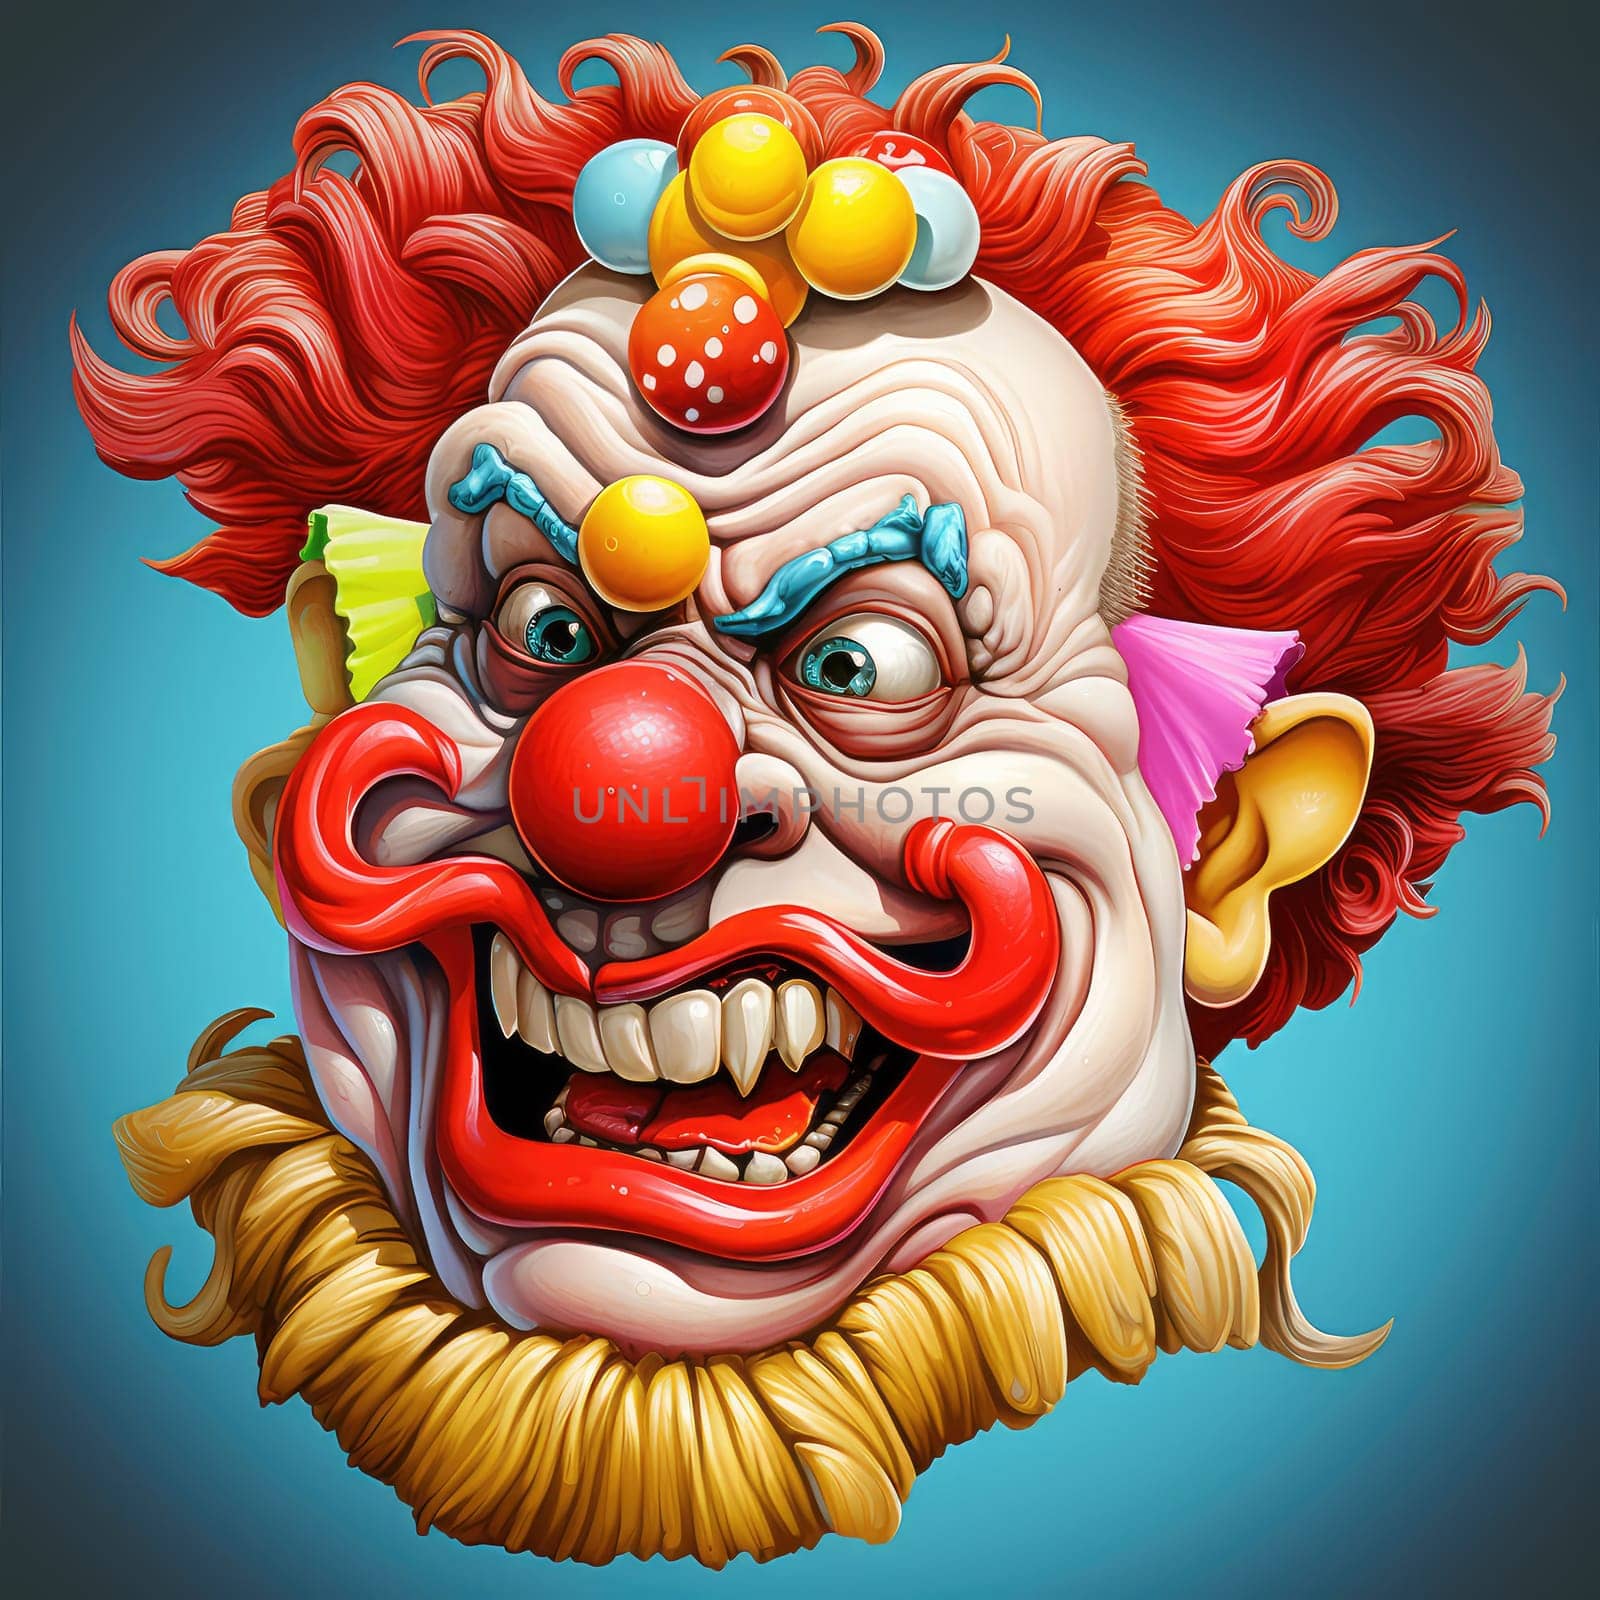 Portrait of clown in psychedelic pop art style by palinchak